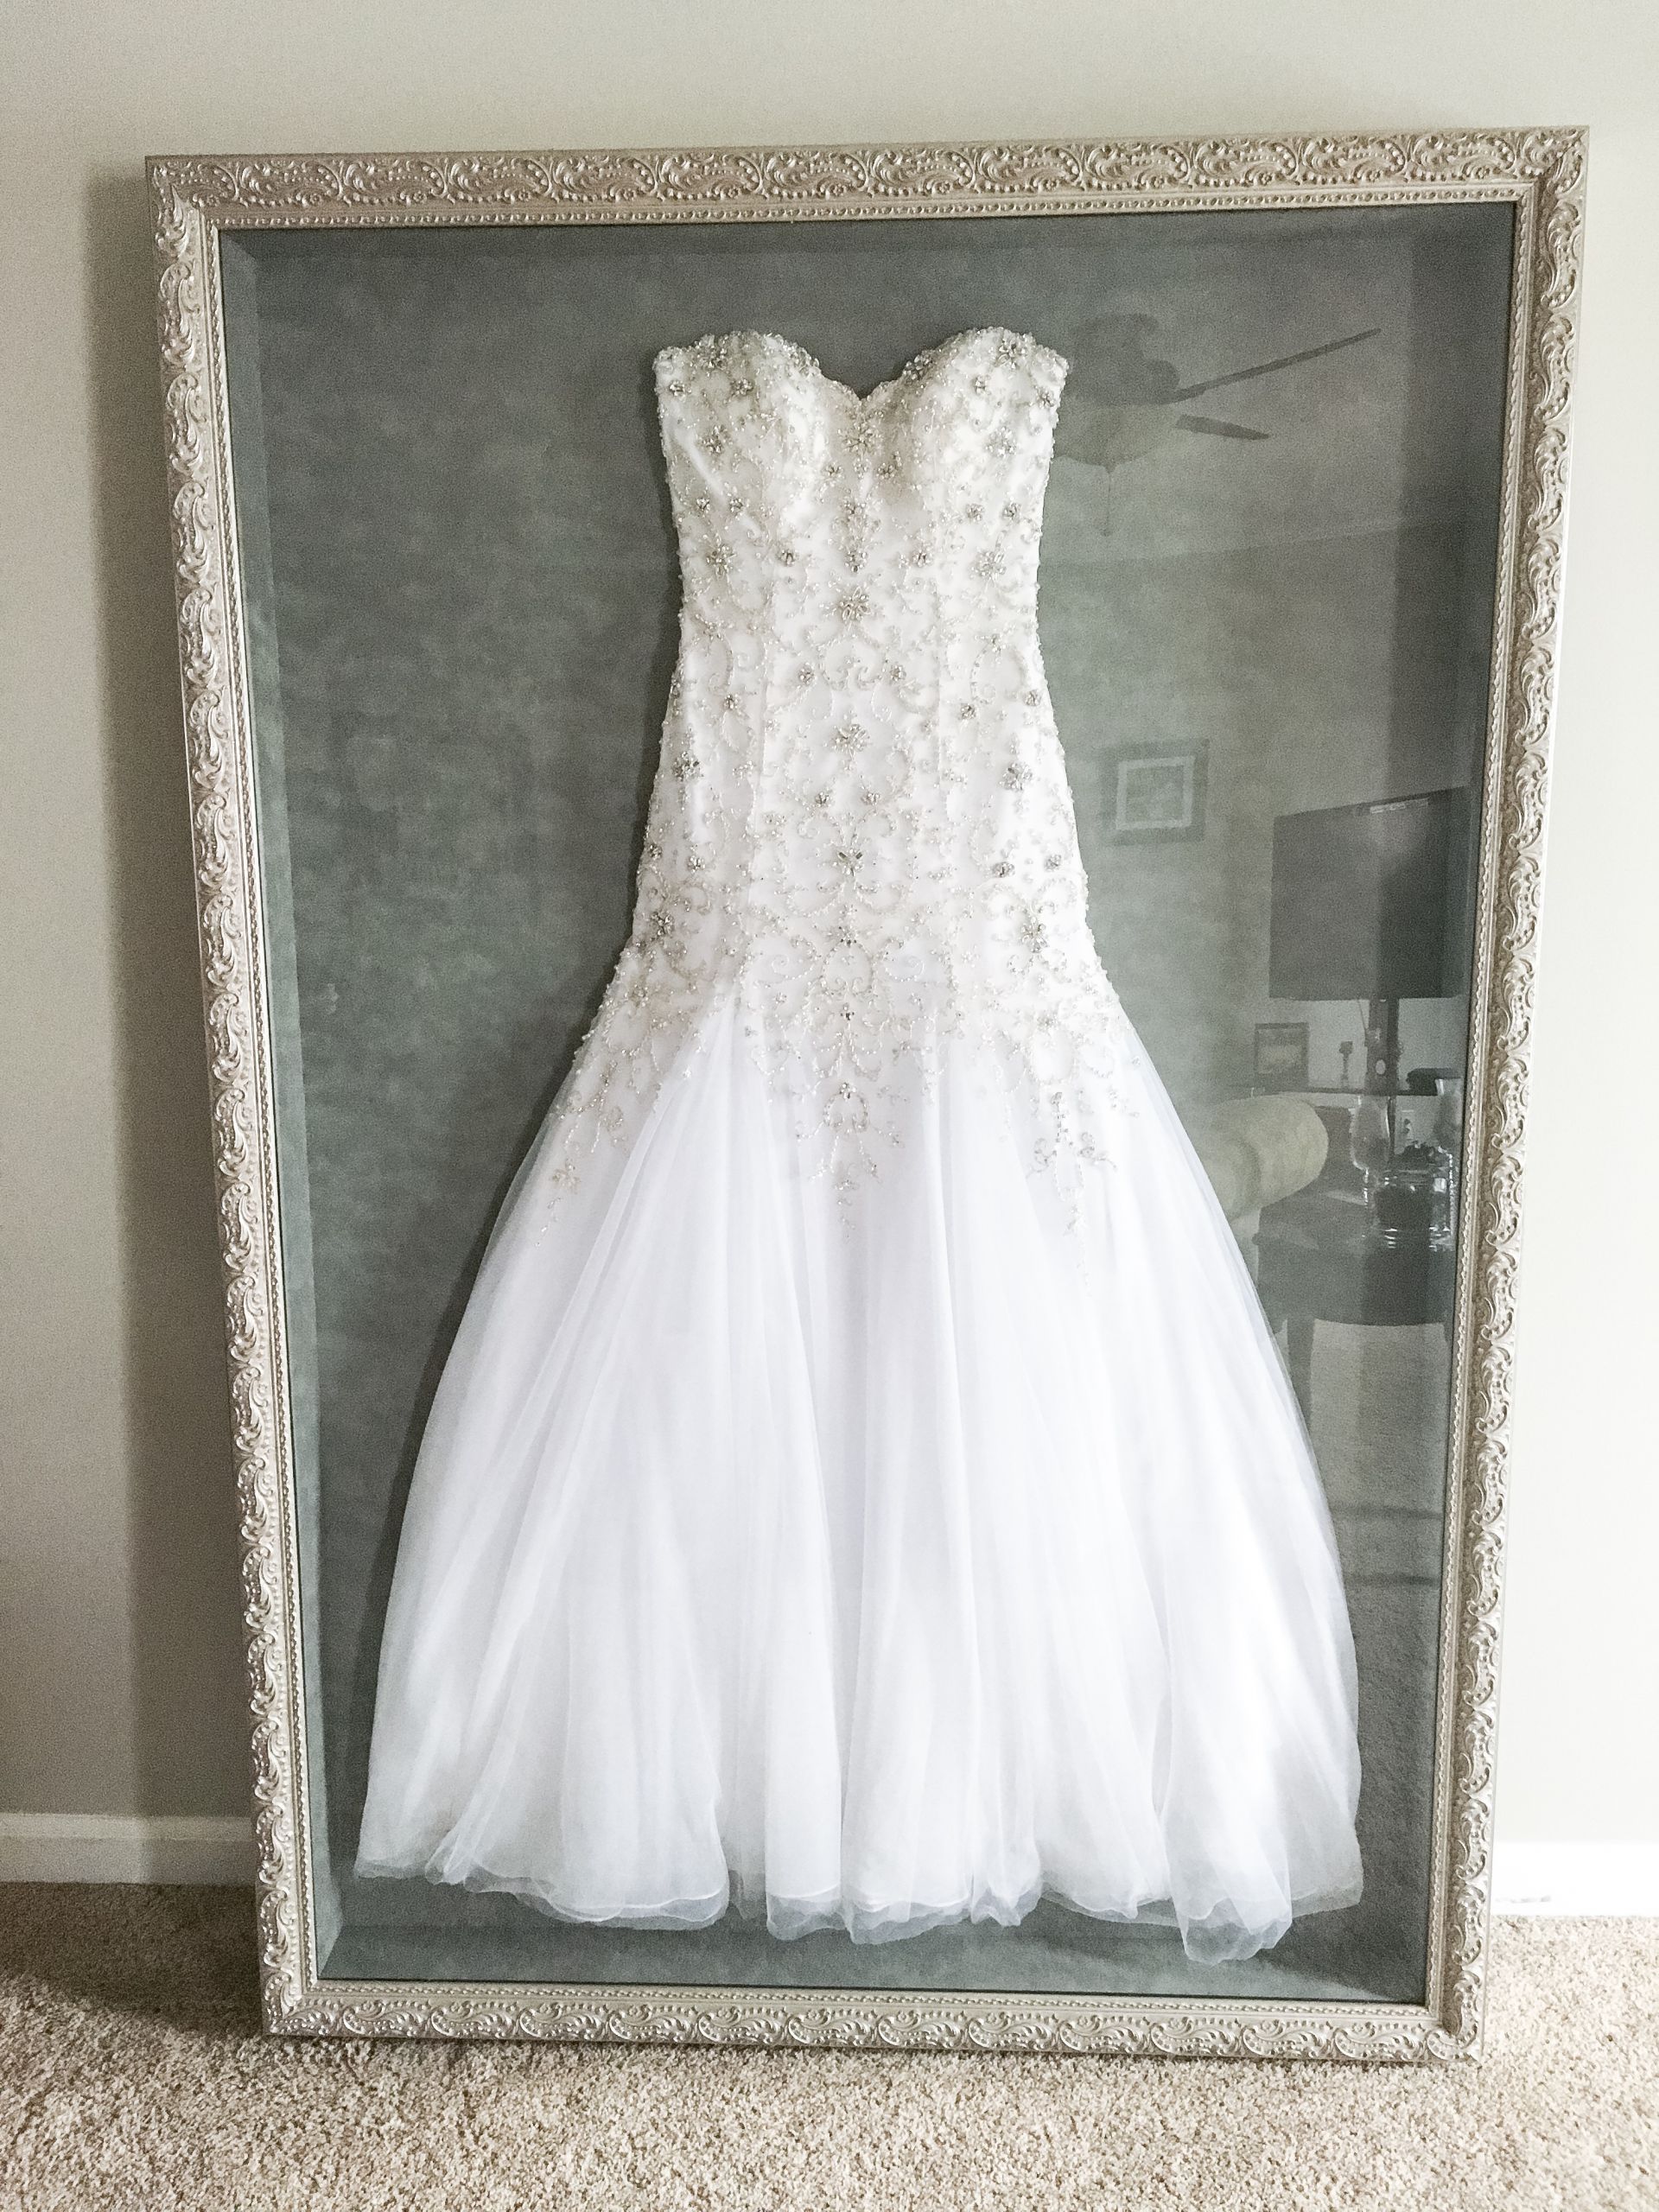 Preserve Wedding Dress
 Wedding Dress Frame Ideas To Preserve Your Precious